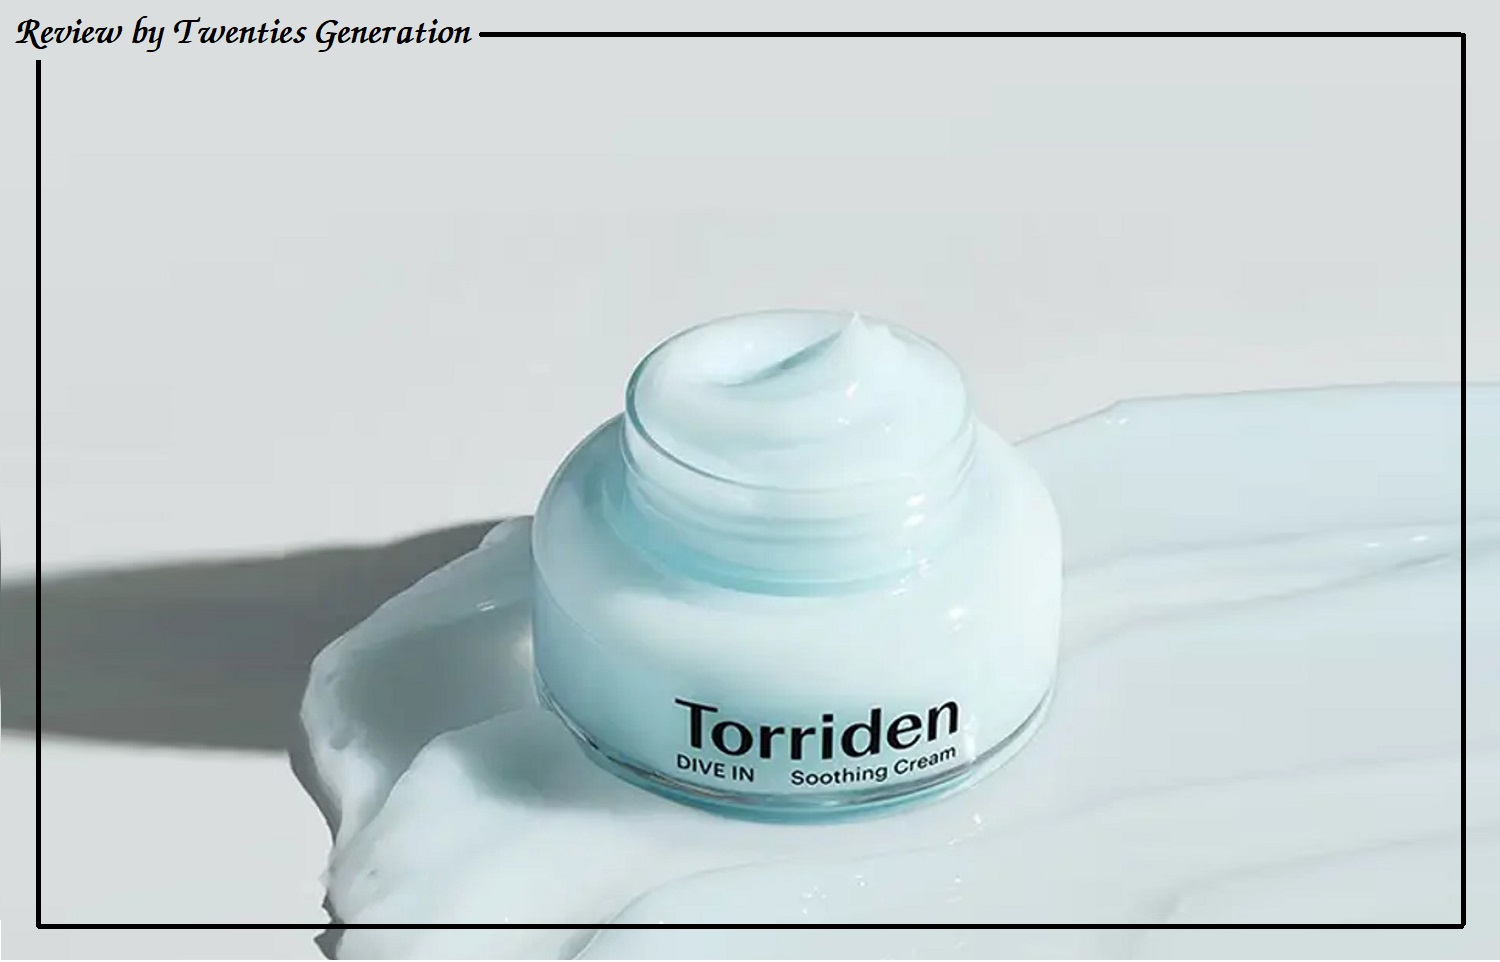 Torriden Dive In Soothing Cream Ingredients